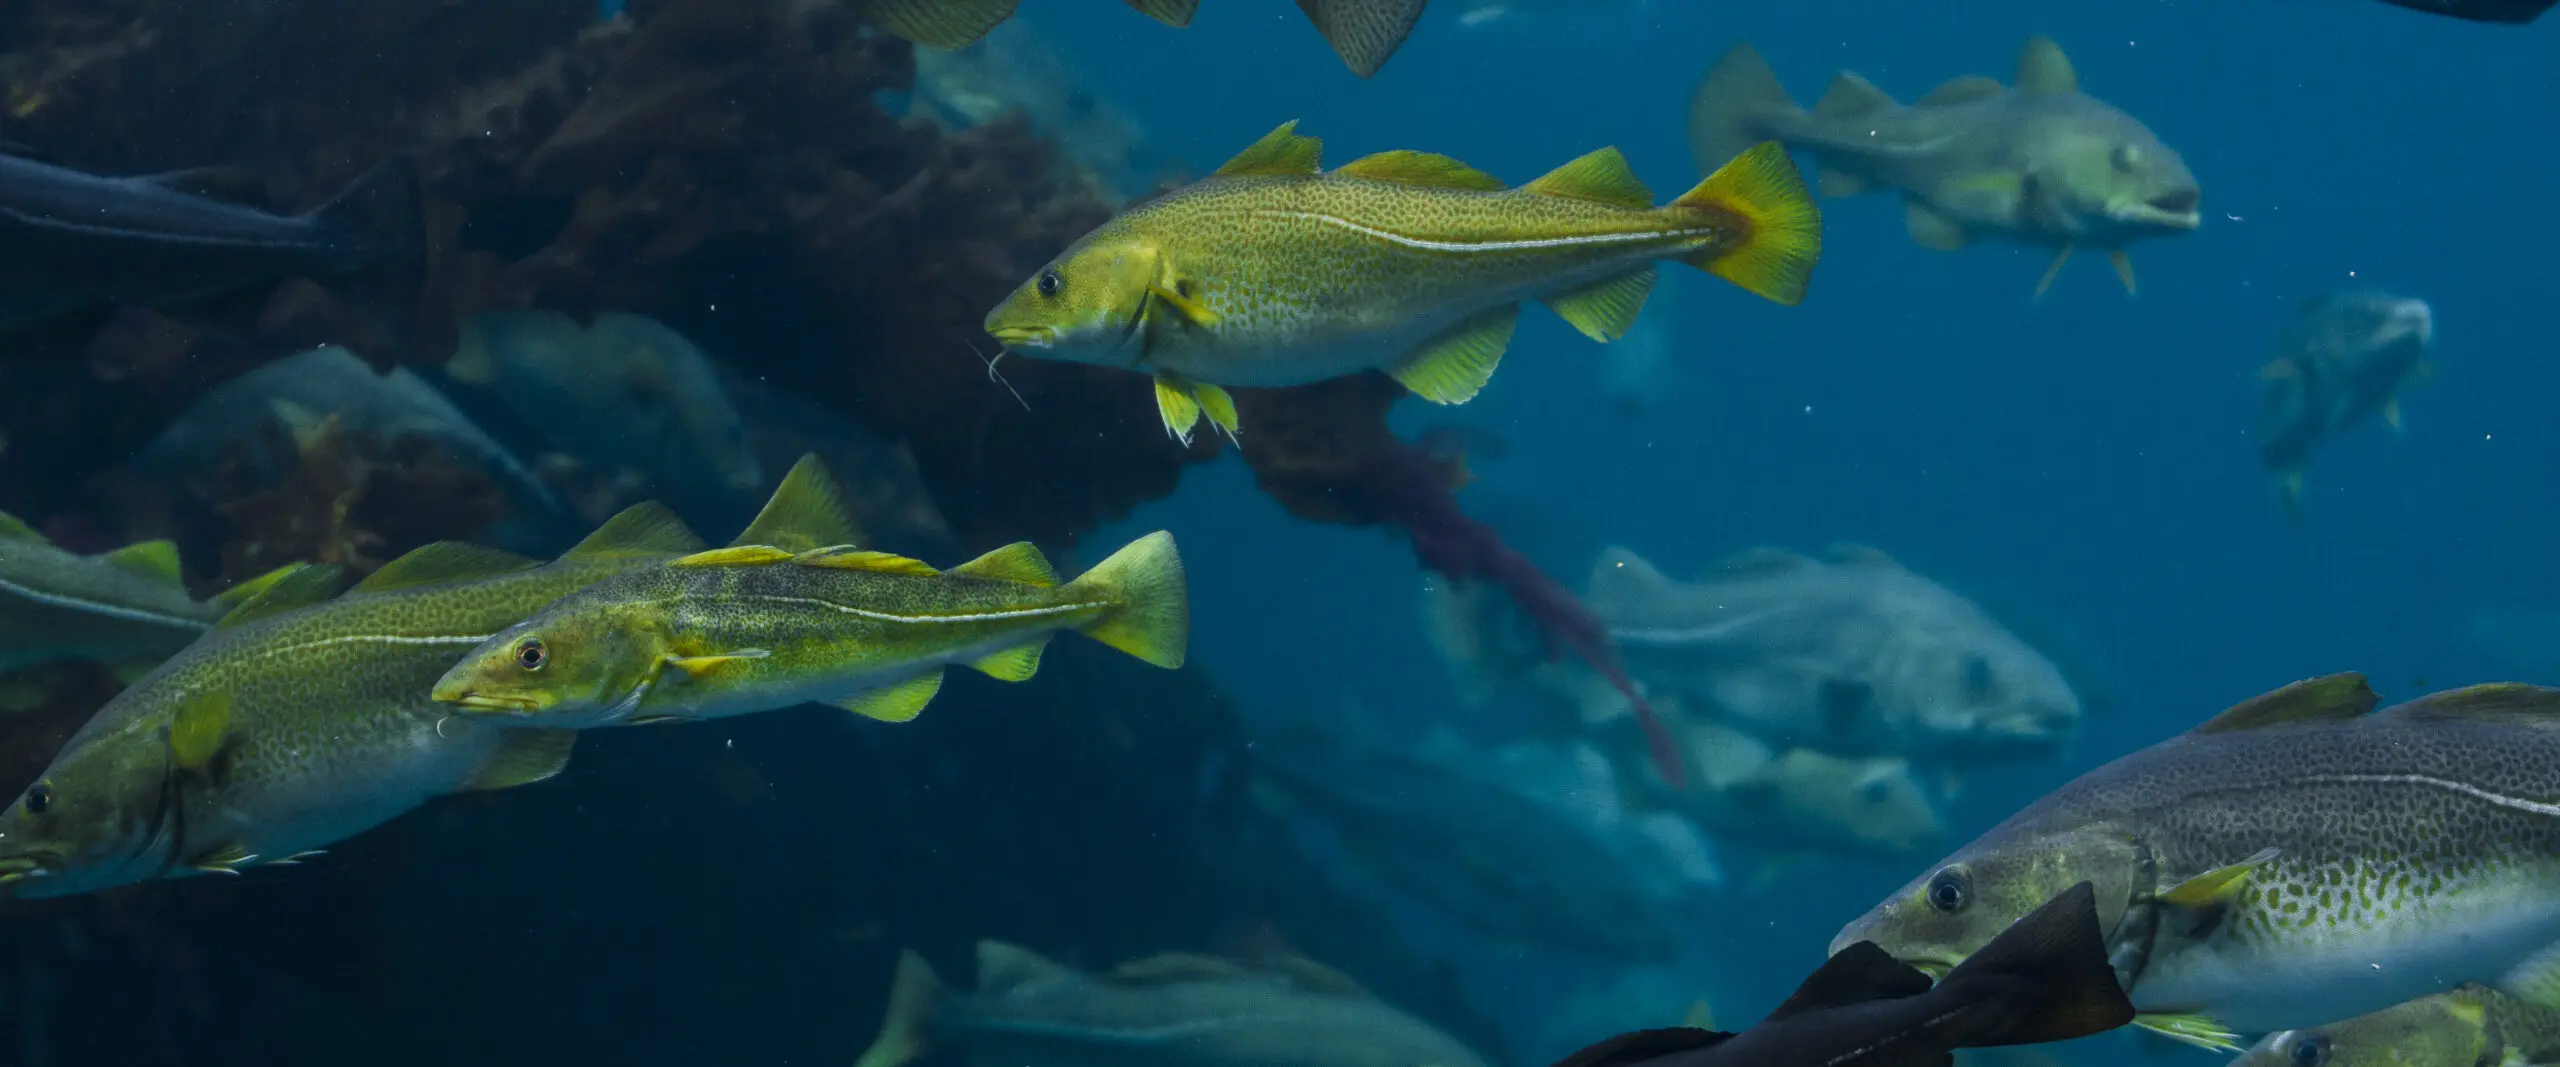 Wandbild (473) Yellow Fisch präsentiert: Wasser,Tiere,Fische,Unterwasser